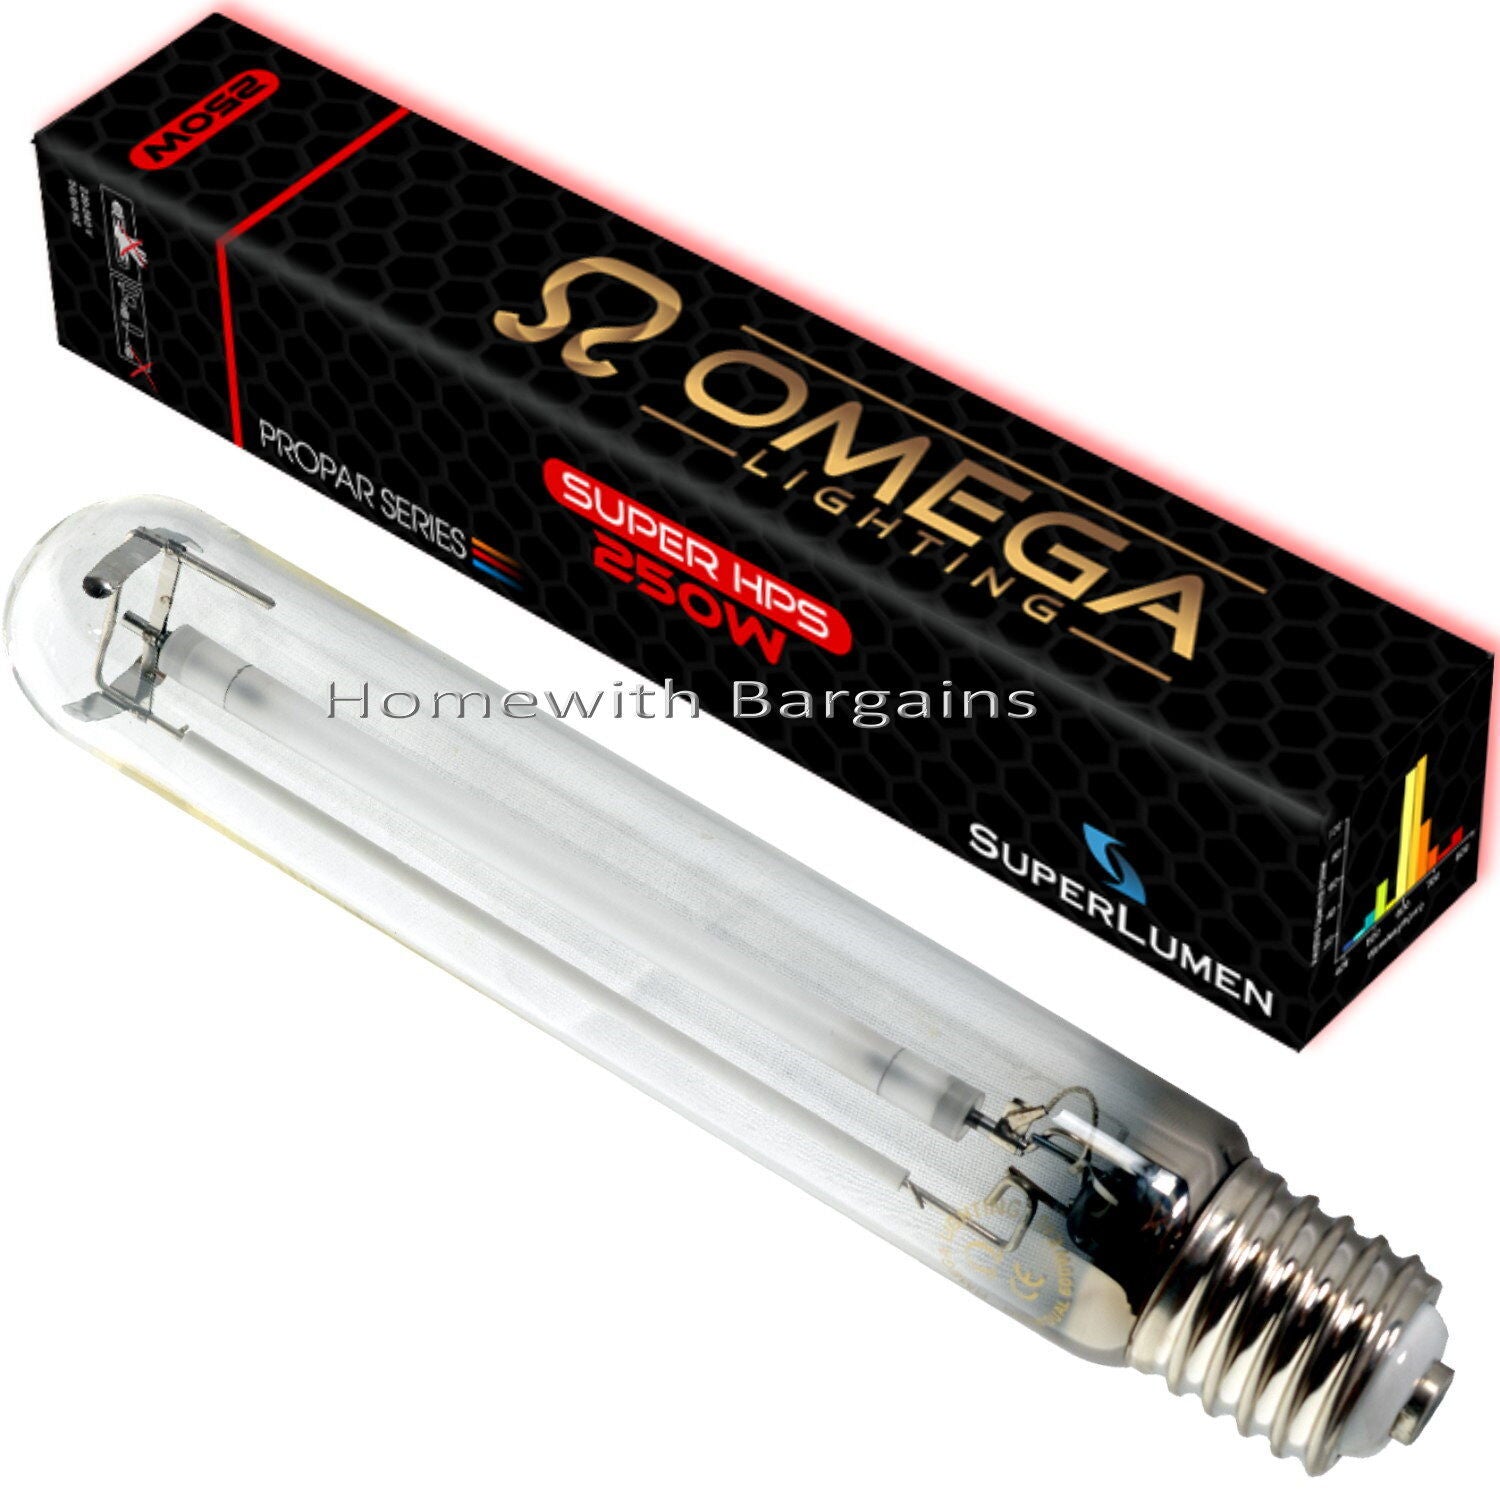 Omega 250w SUPER HPS Son-T Lamp, 250 Watt E40, Flowering 2000k Light Bulb